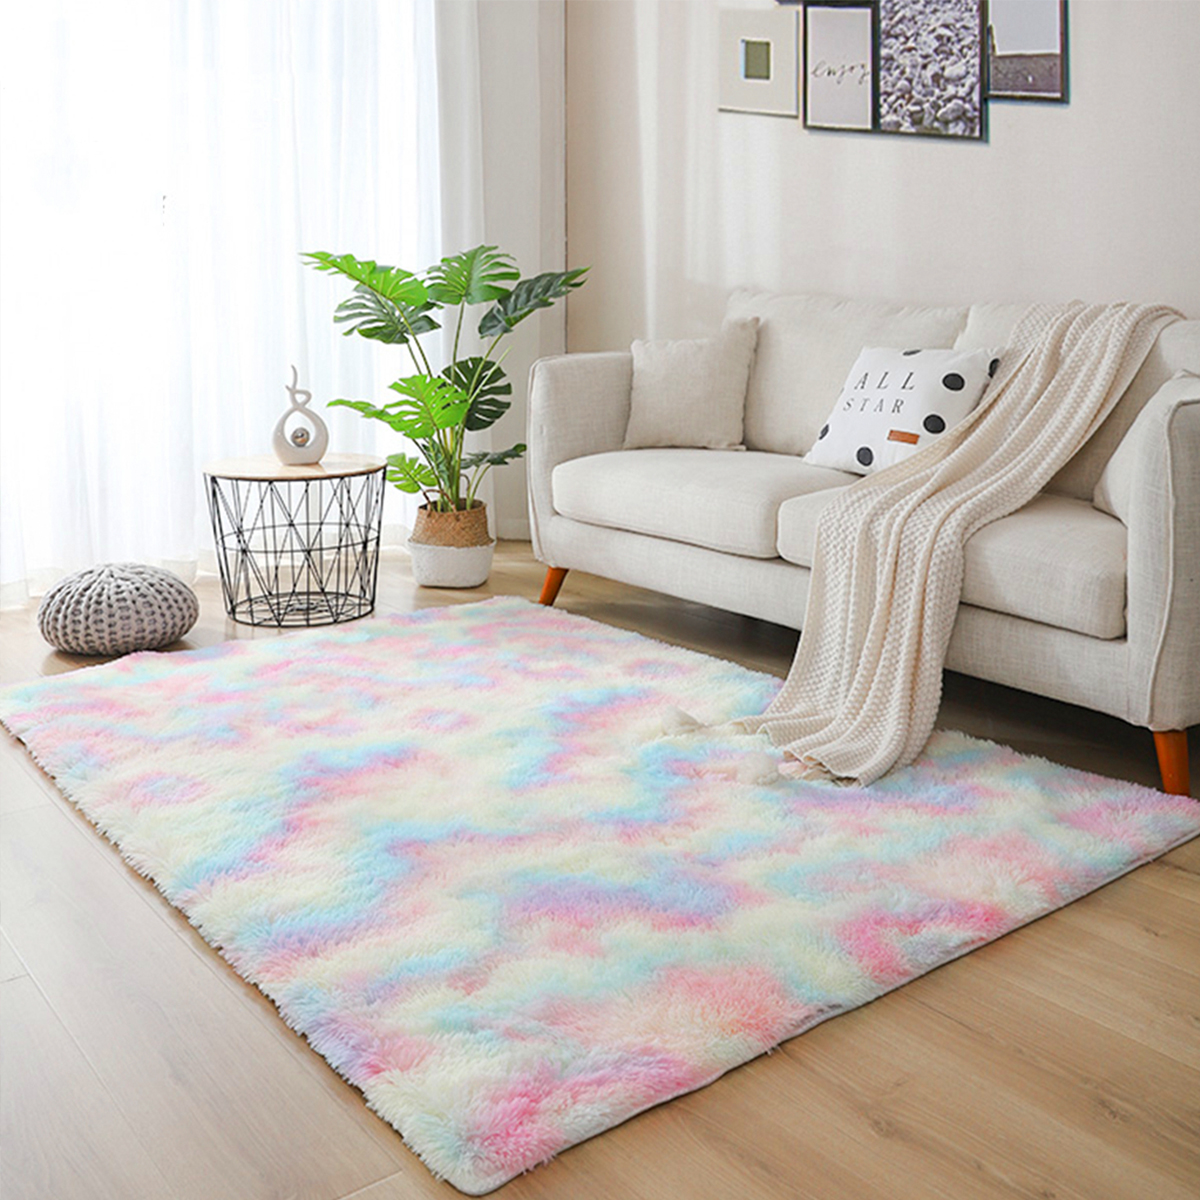 Gradient-Rainbow-Tie-dye-Plush-Carpet-Living-Room-Bedroom-Coffee-Table-Blanket-Study-Room-Meeting-Ro-1730407-3